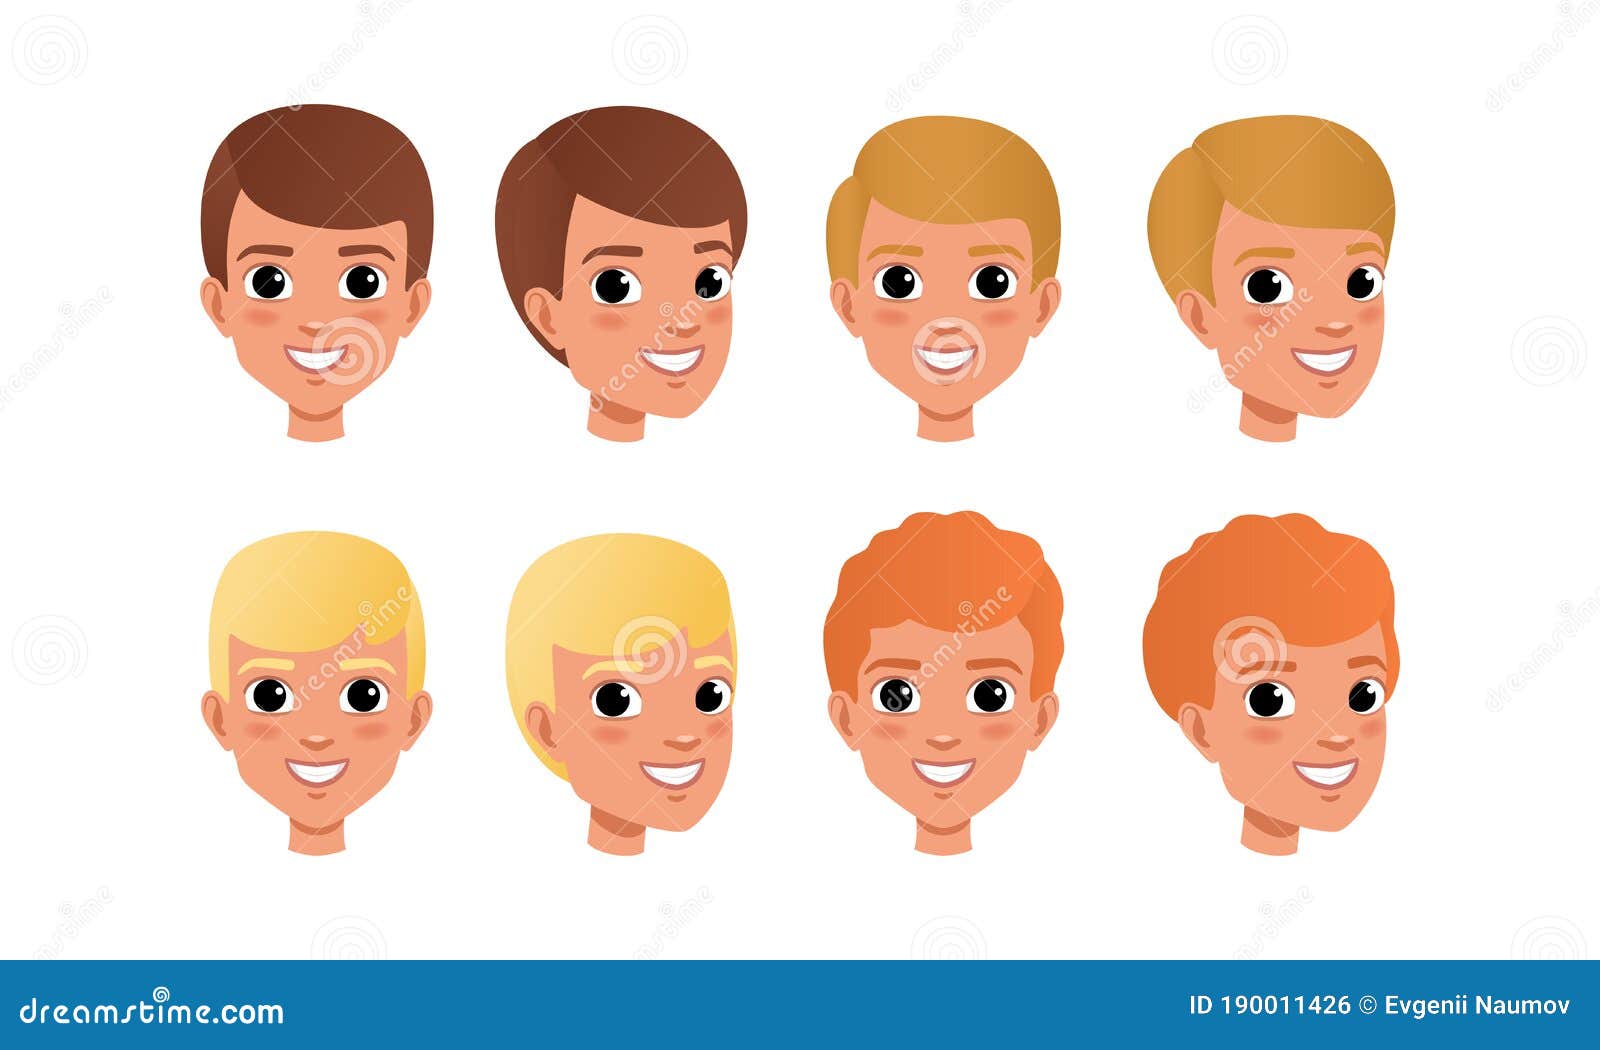 3d renderização de perfil de personagem masculino com cabelo